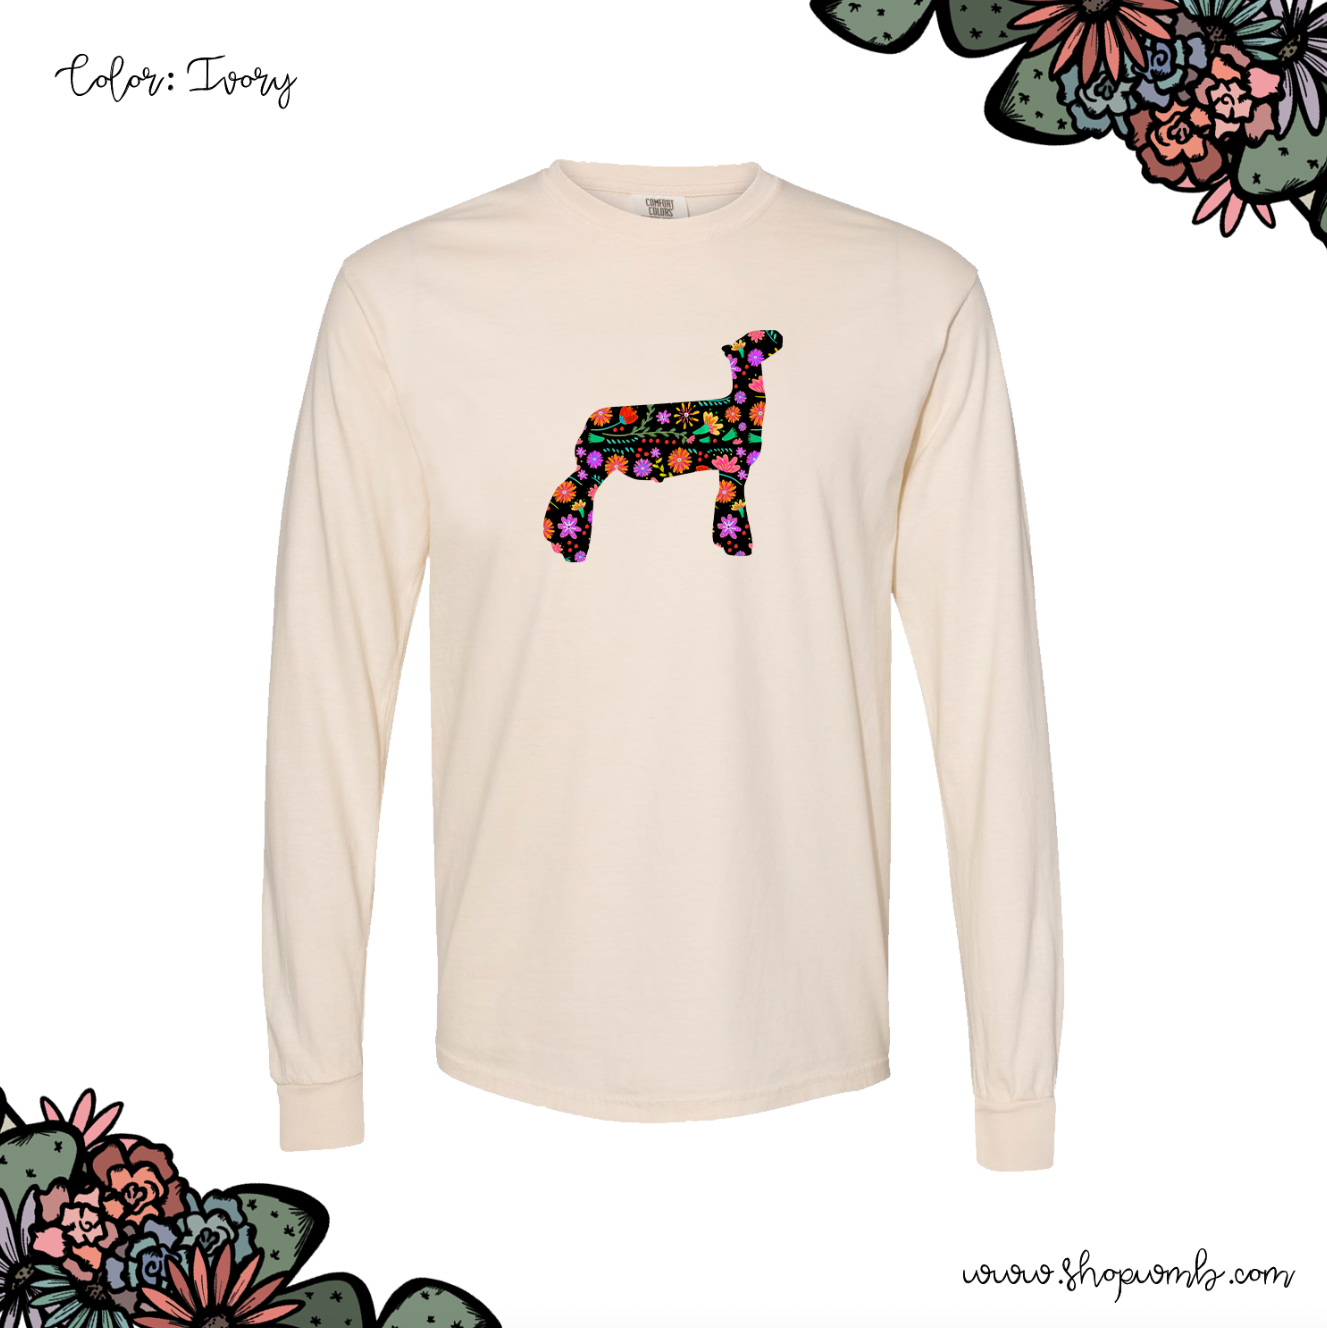 Fiesta Lamb LONG SLEEVE T-Shirt (S-3XL) - Multiple Colors!